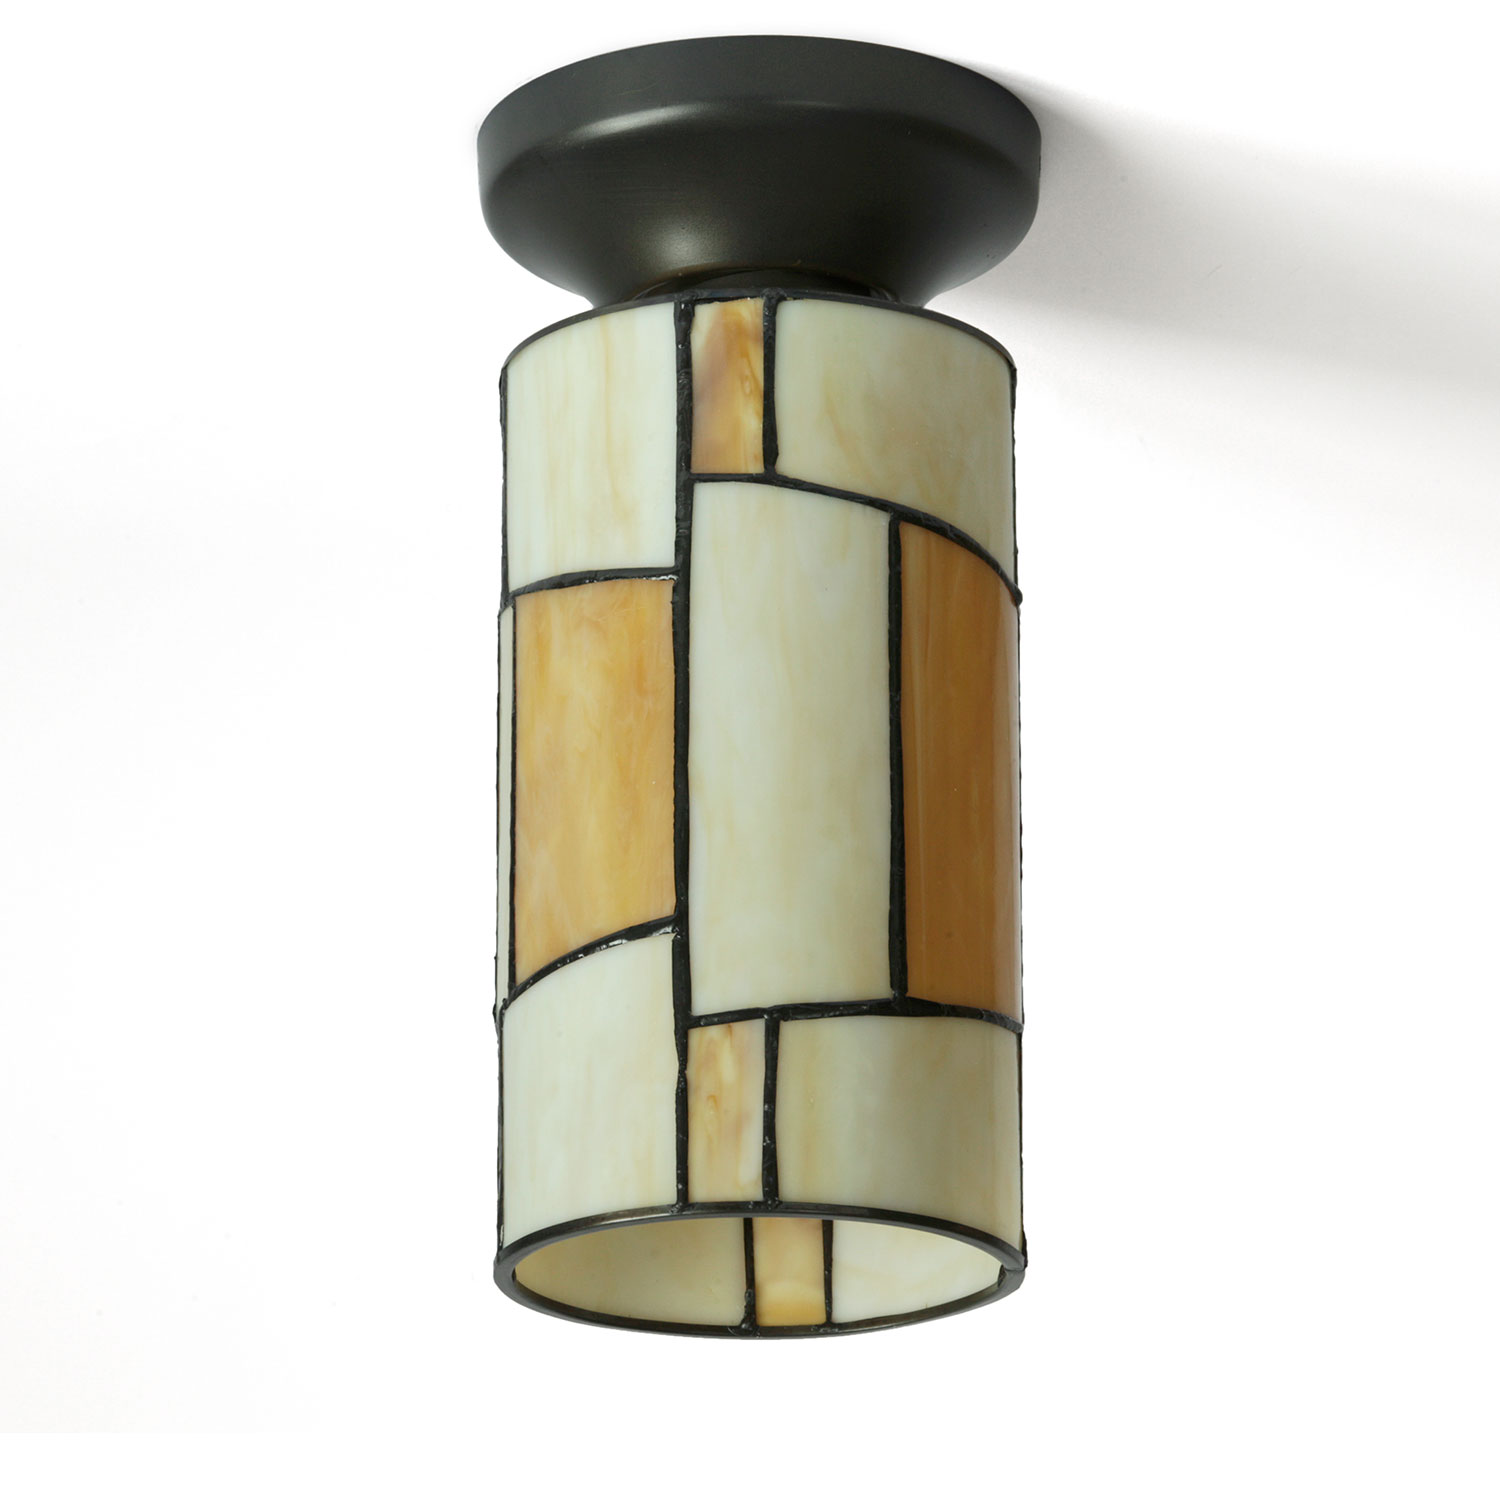 Kleine zylindrische Deckenleuchte aus Tiffany-Glas Ø 13 cm: Zylindrische, kleine Deckenleuchte mit Tiffanyglas-Schirm